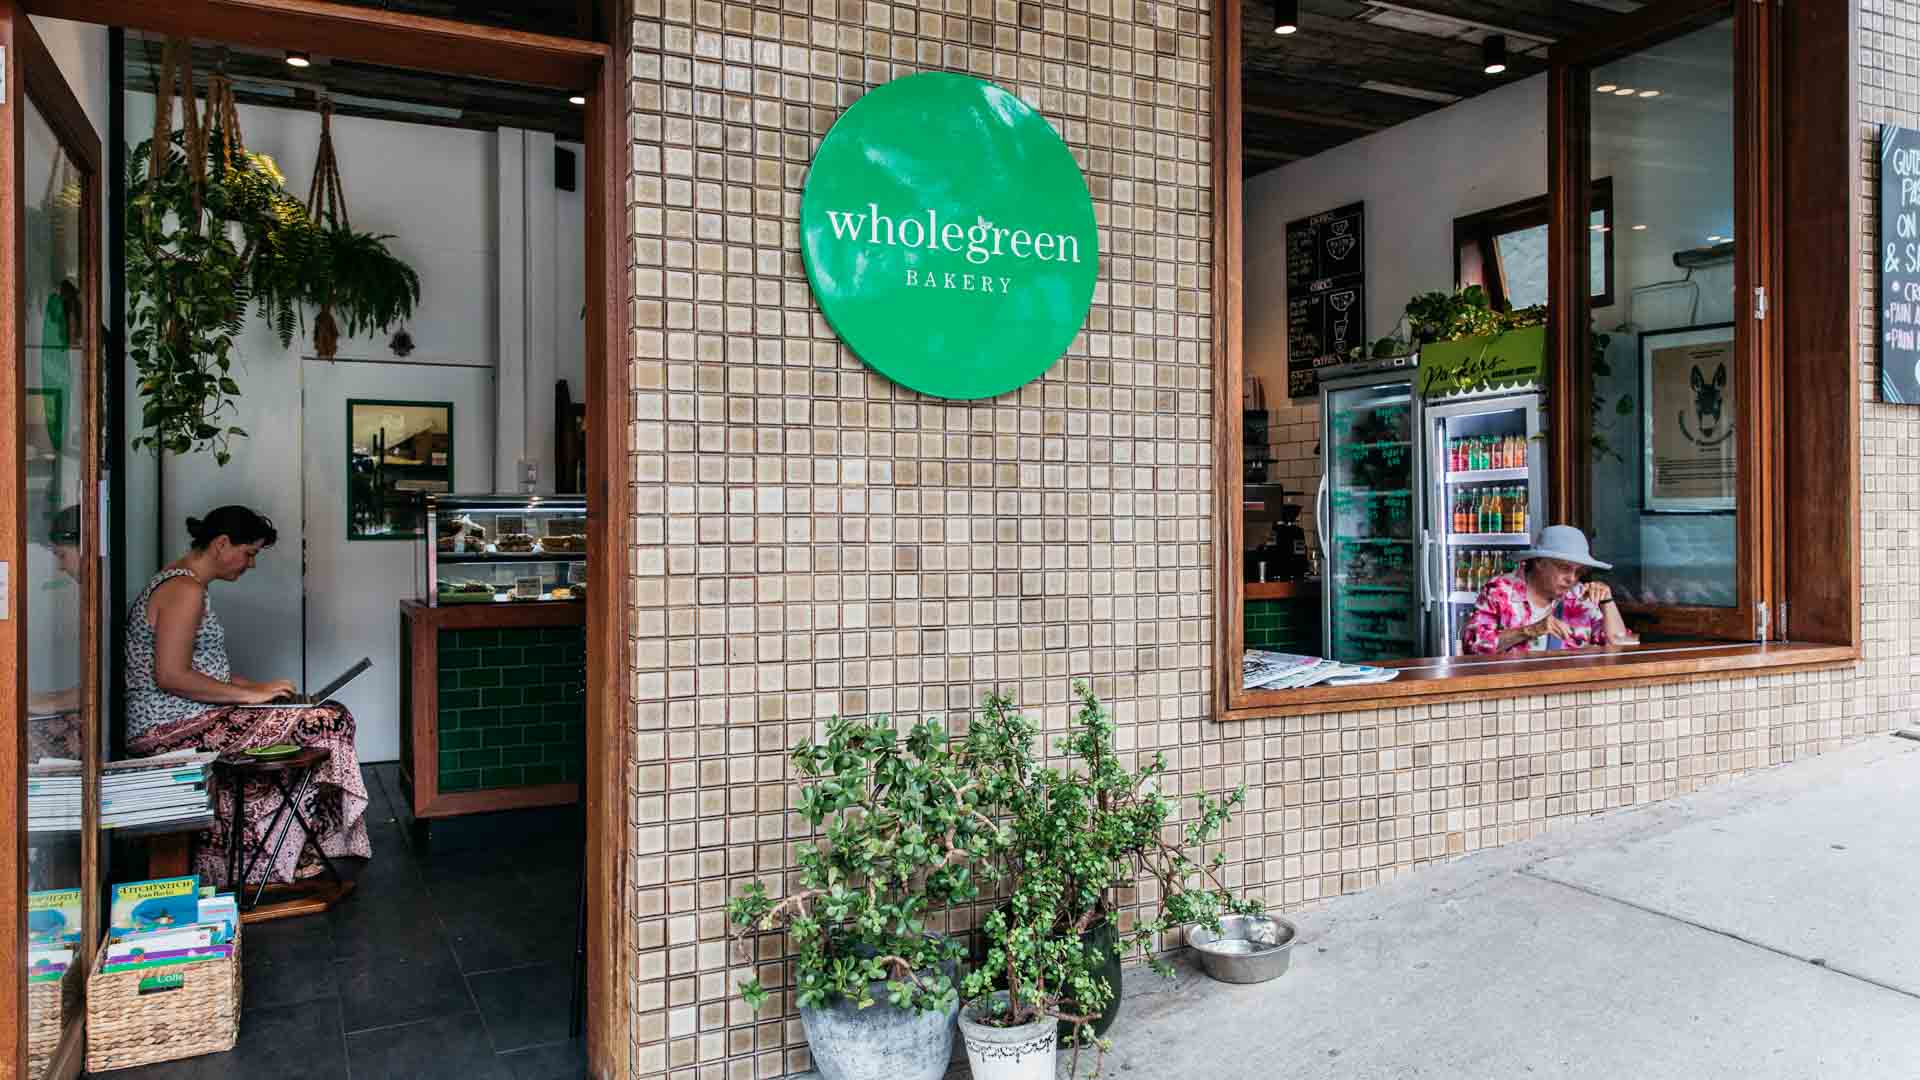 Wholegreen Bakery